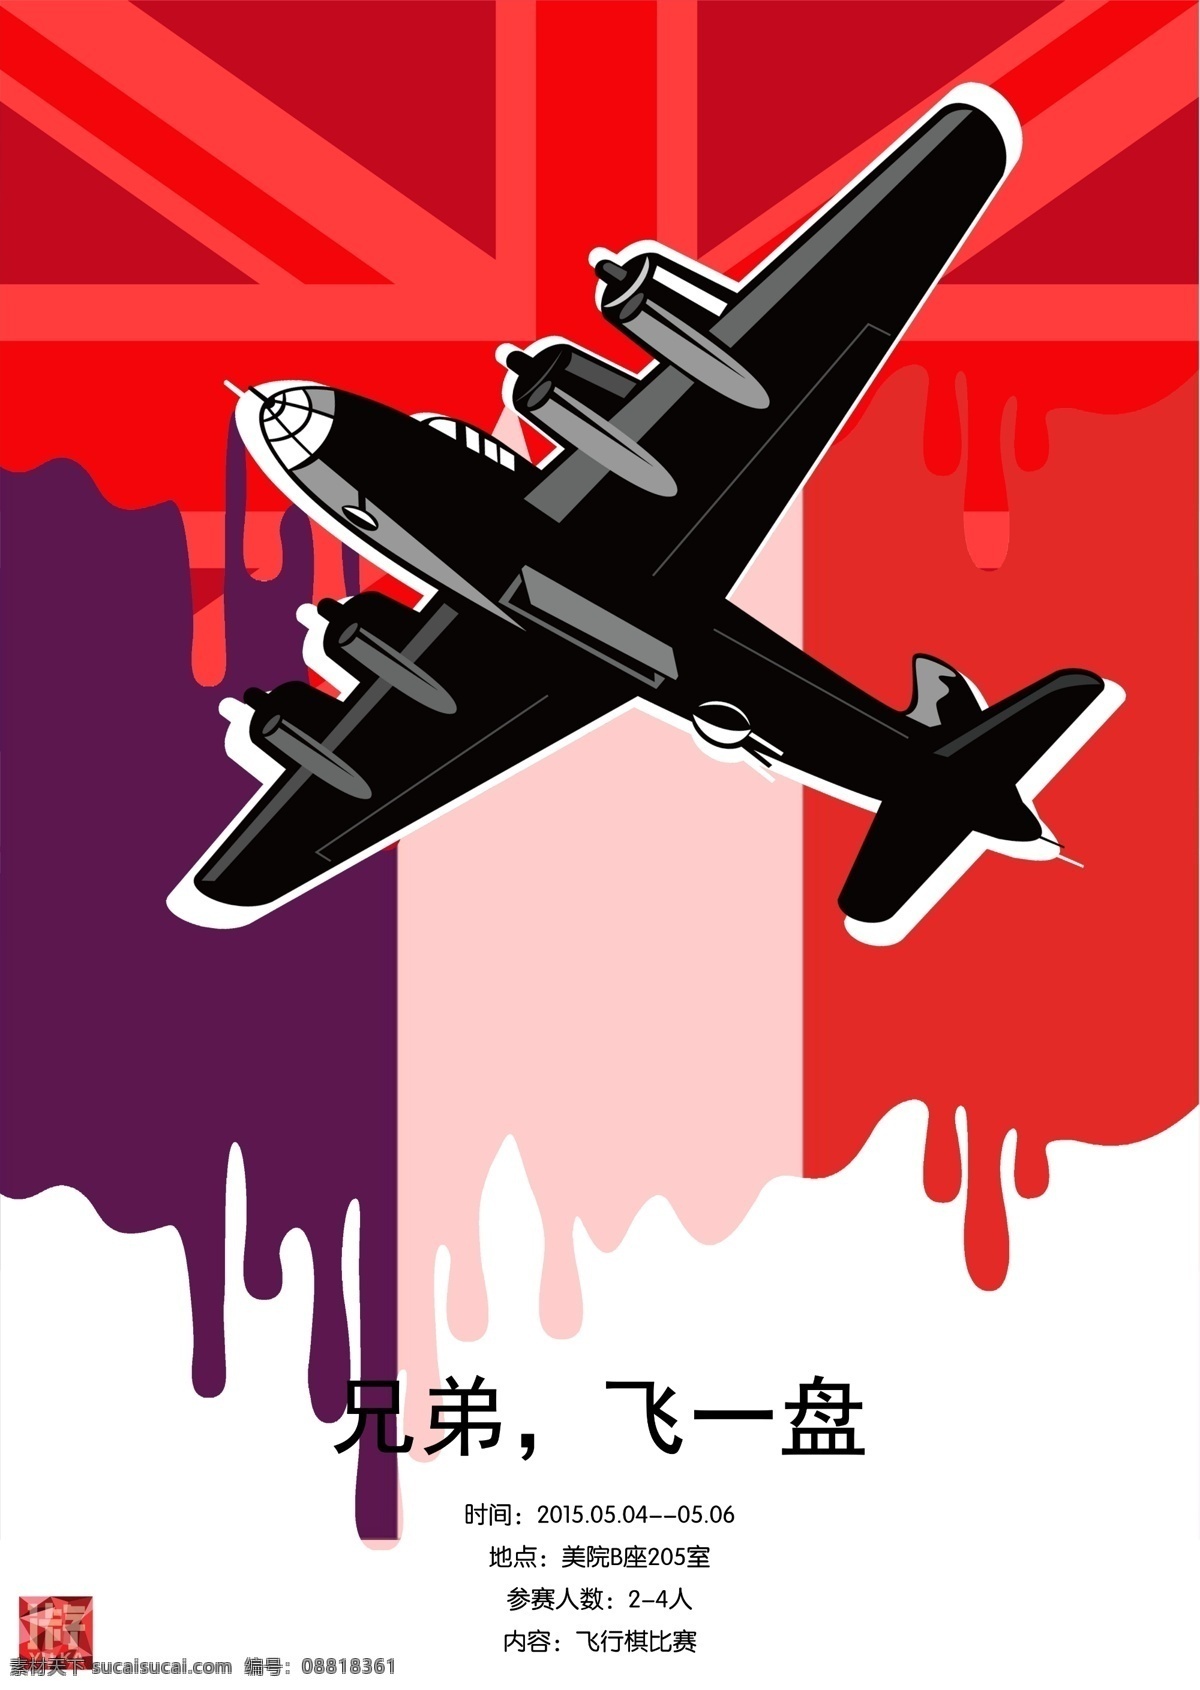 二战 系列 飞行棋 海报 飞机 国旗 兄弟 飞一盘 流血 原创设计 原创海报